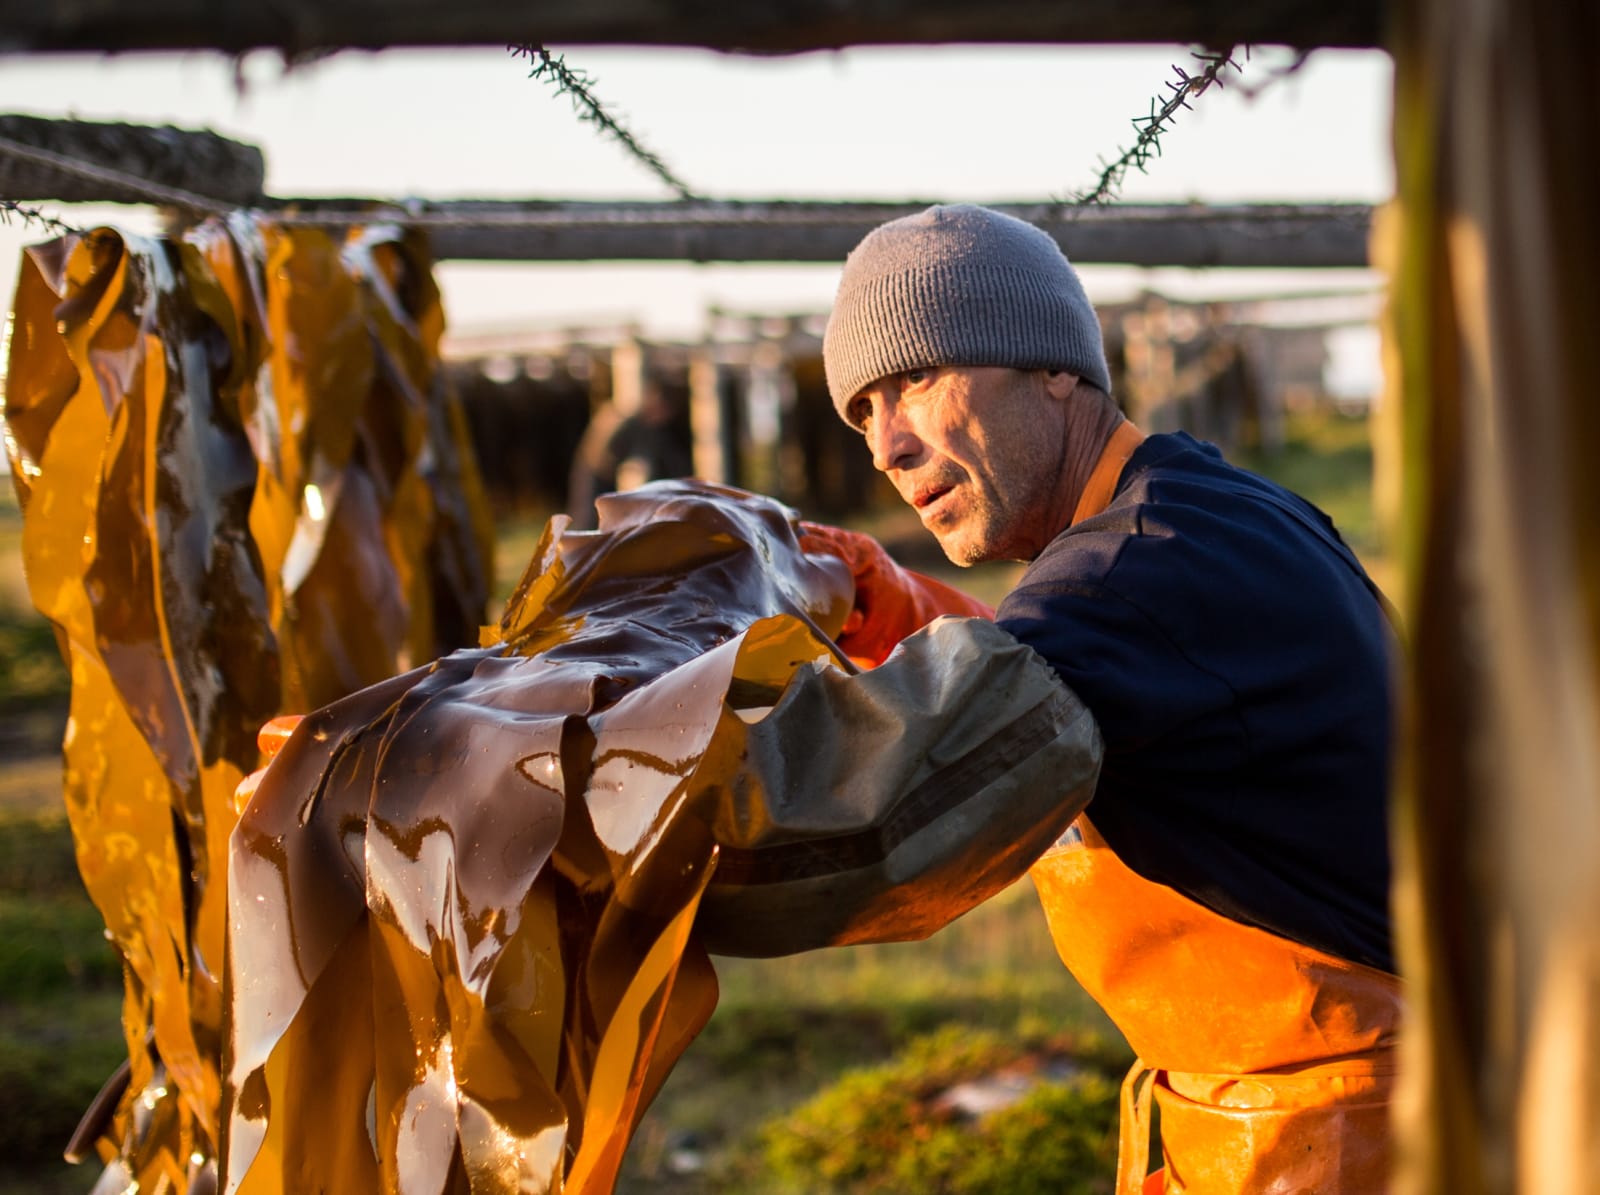 Harvesting kelp in Arkhangelsk Region, Russia